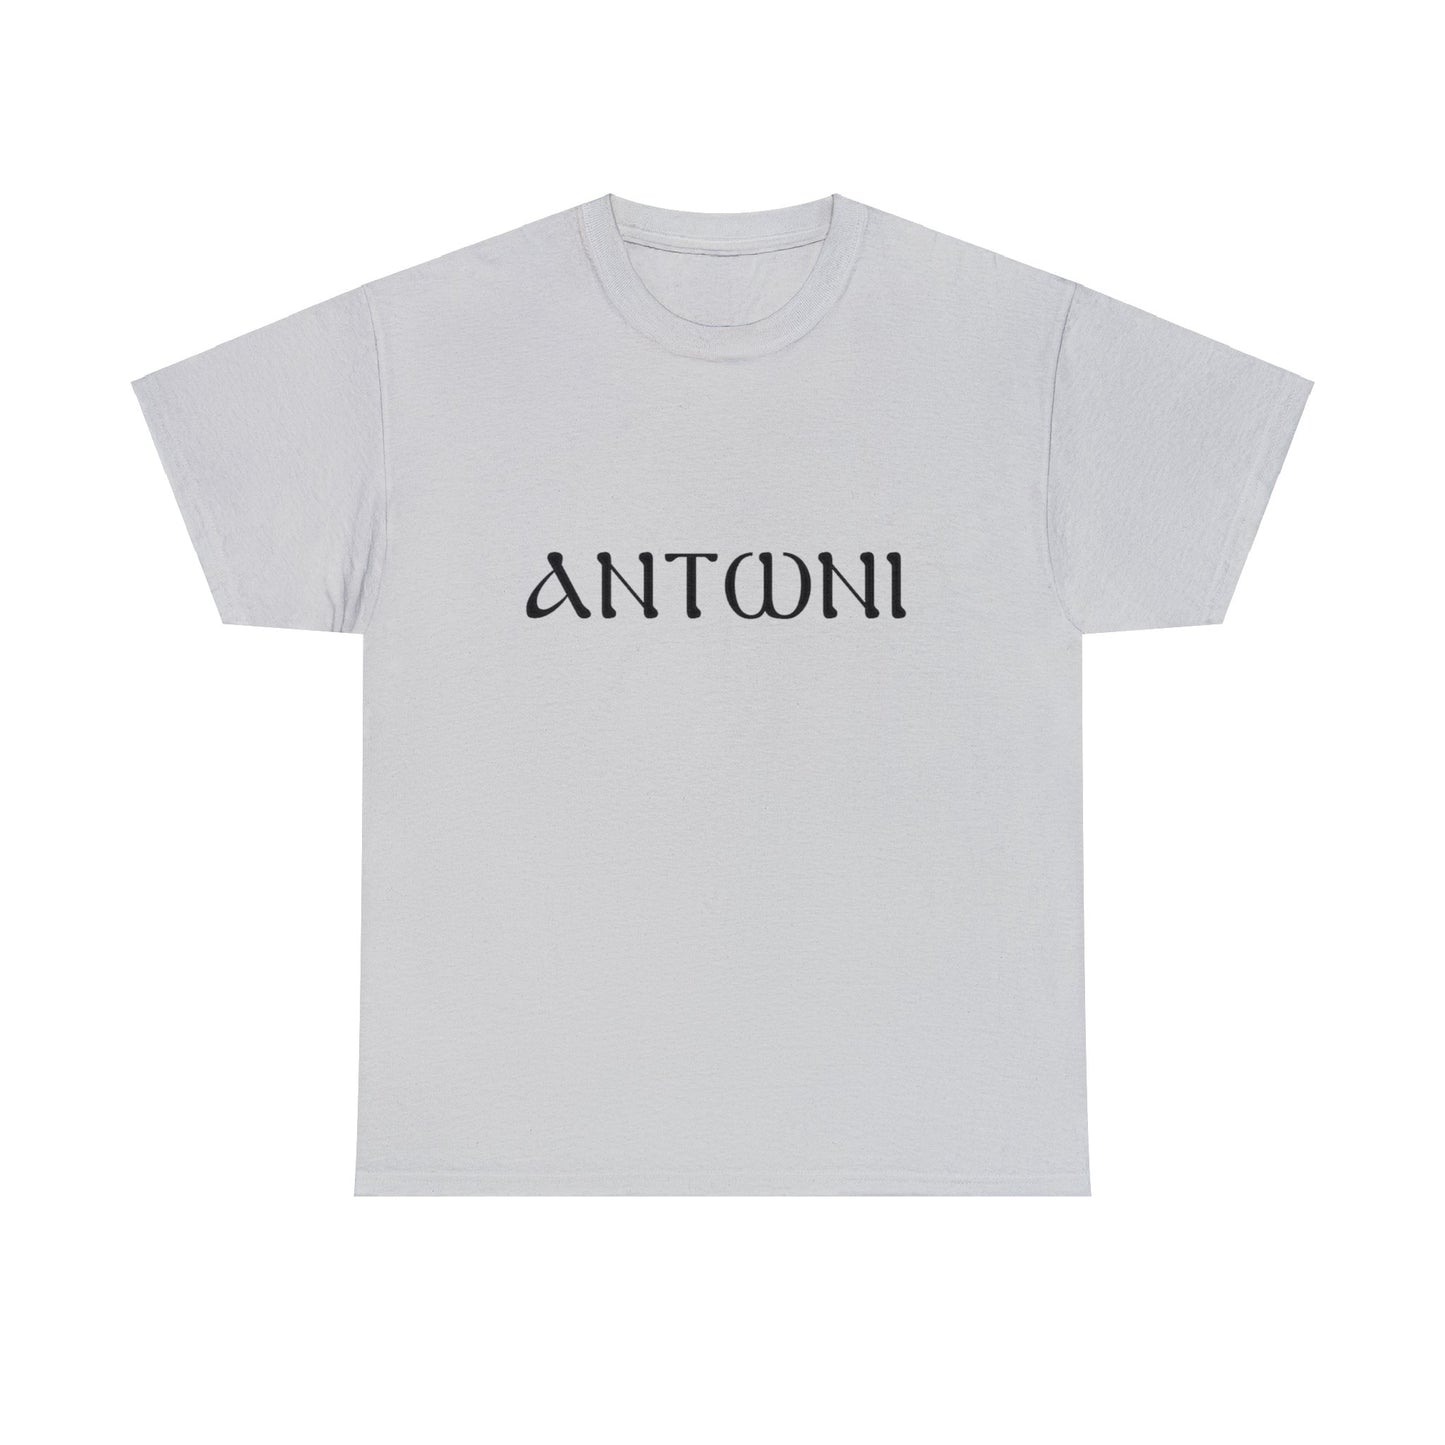 "Anthony" T-shirt